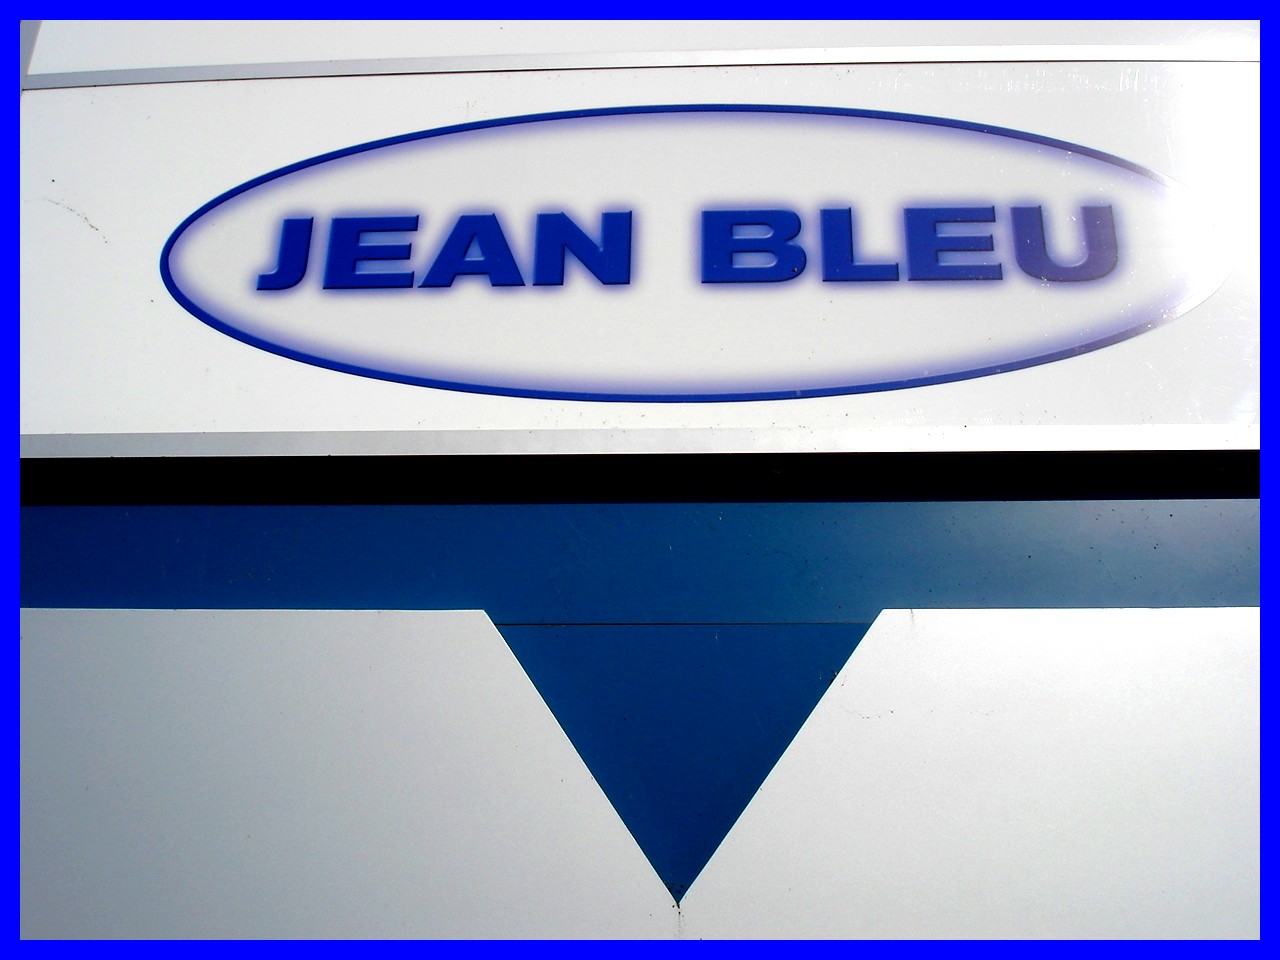 Jeans Bleu / Blue jeans - Dans ma ville  / Hometown - 12 octobre 2008.